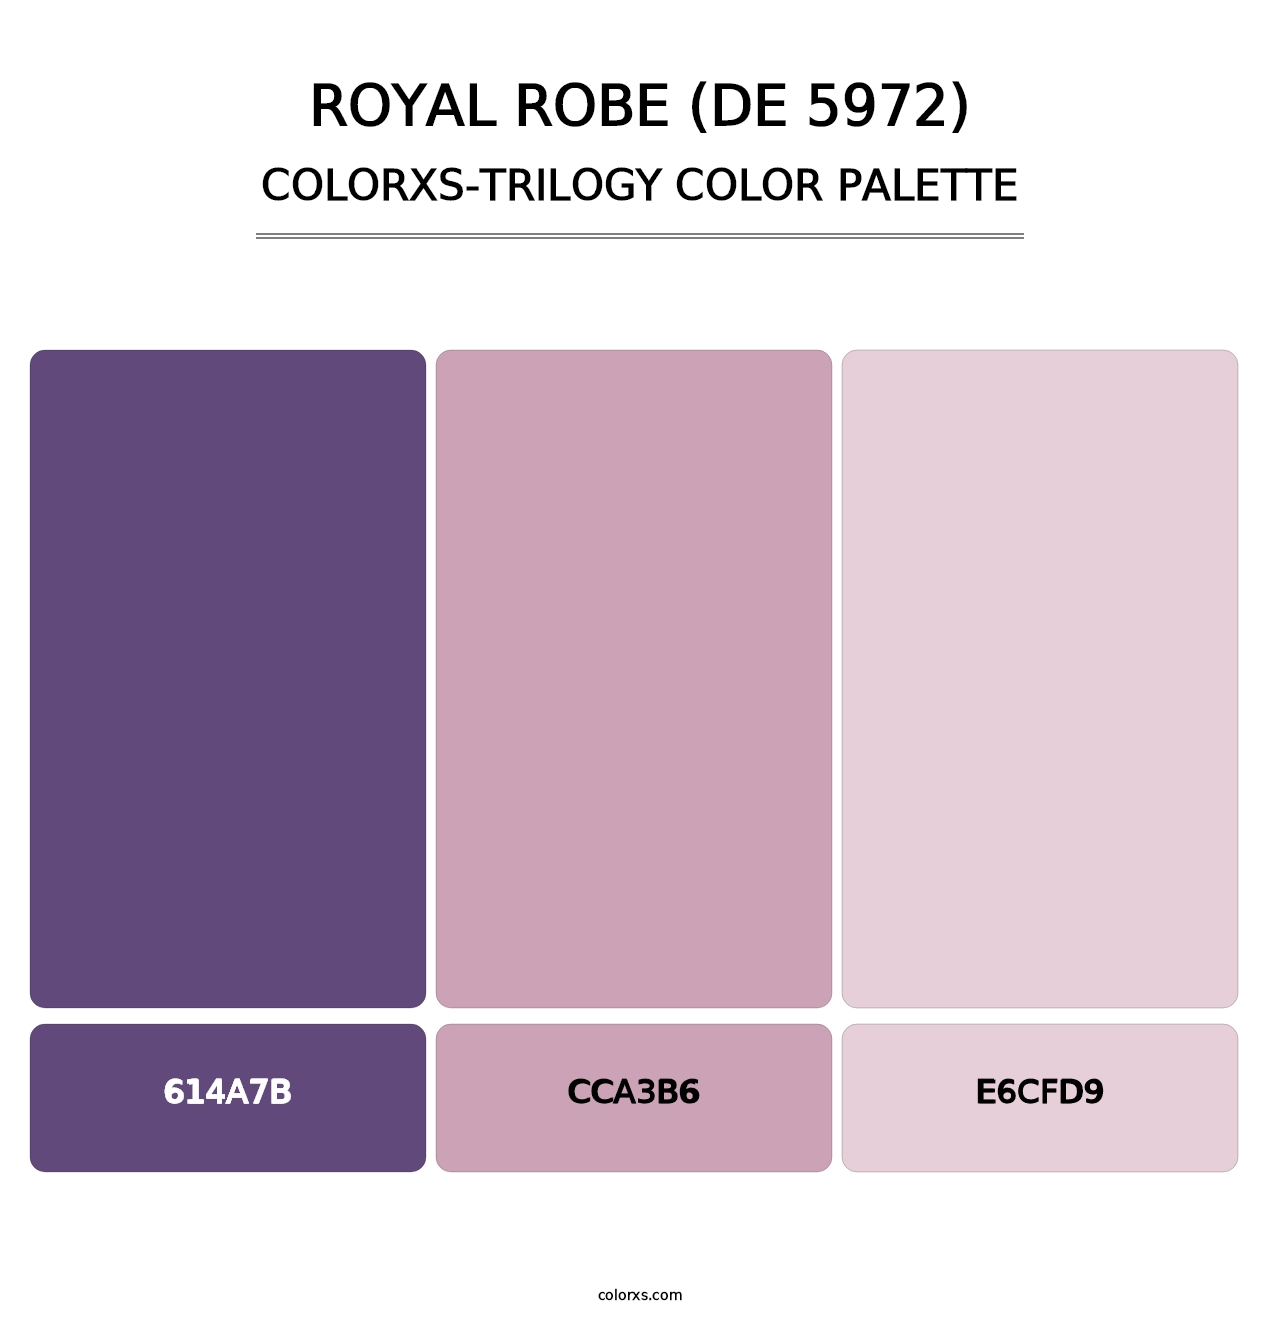 Royal Robe (DE 5972) - Colorxs Trilogy Palette